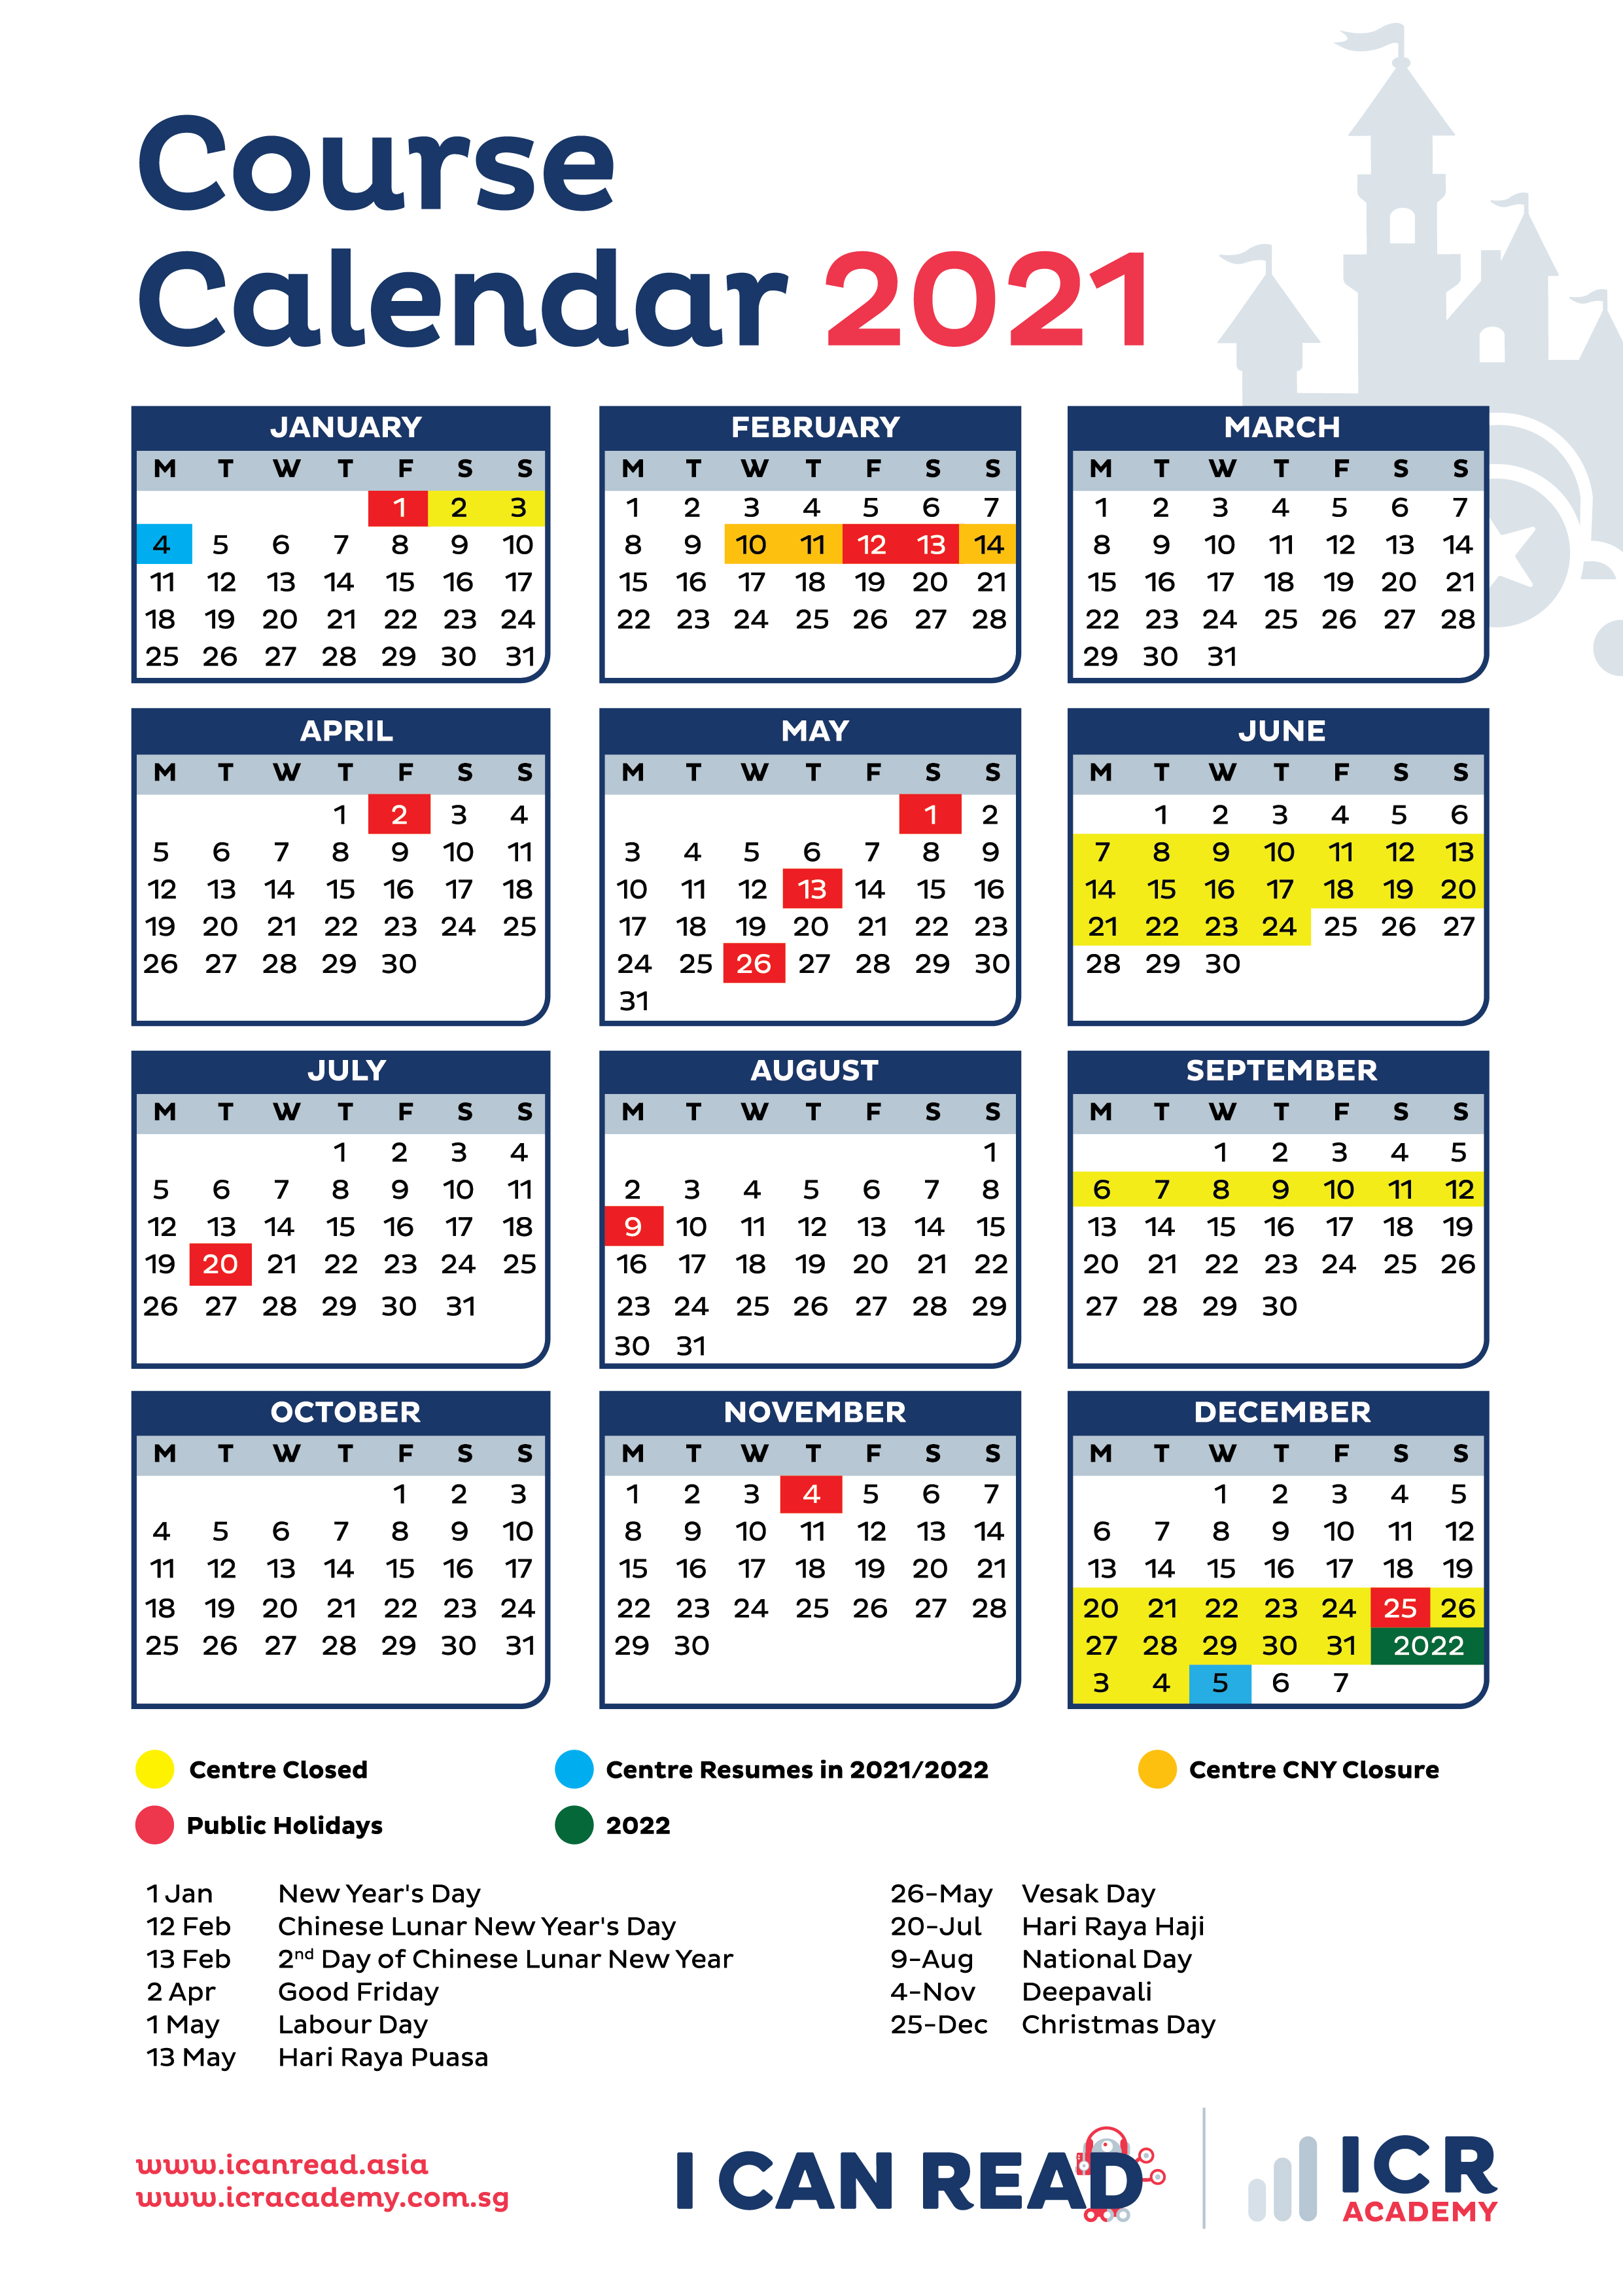 sar-academy-calendar-2022-november-calendar-2022